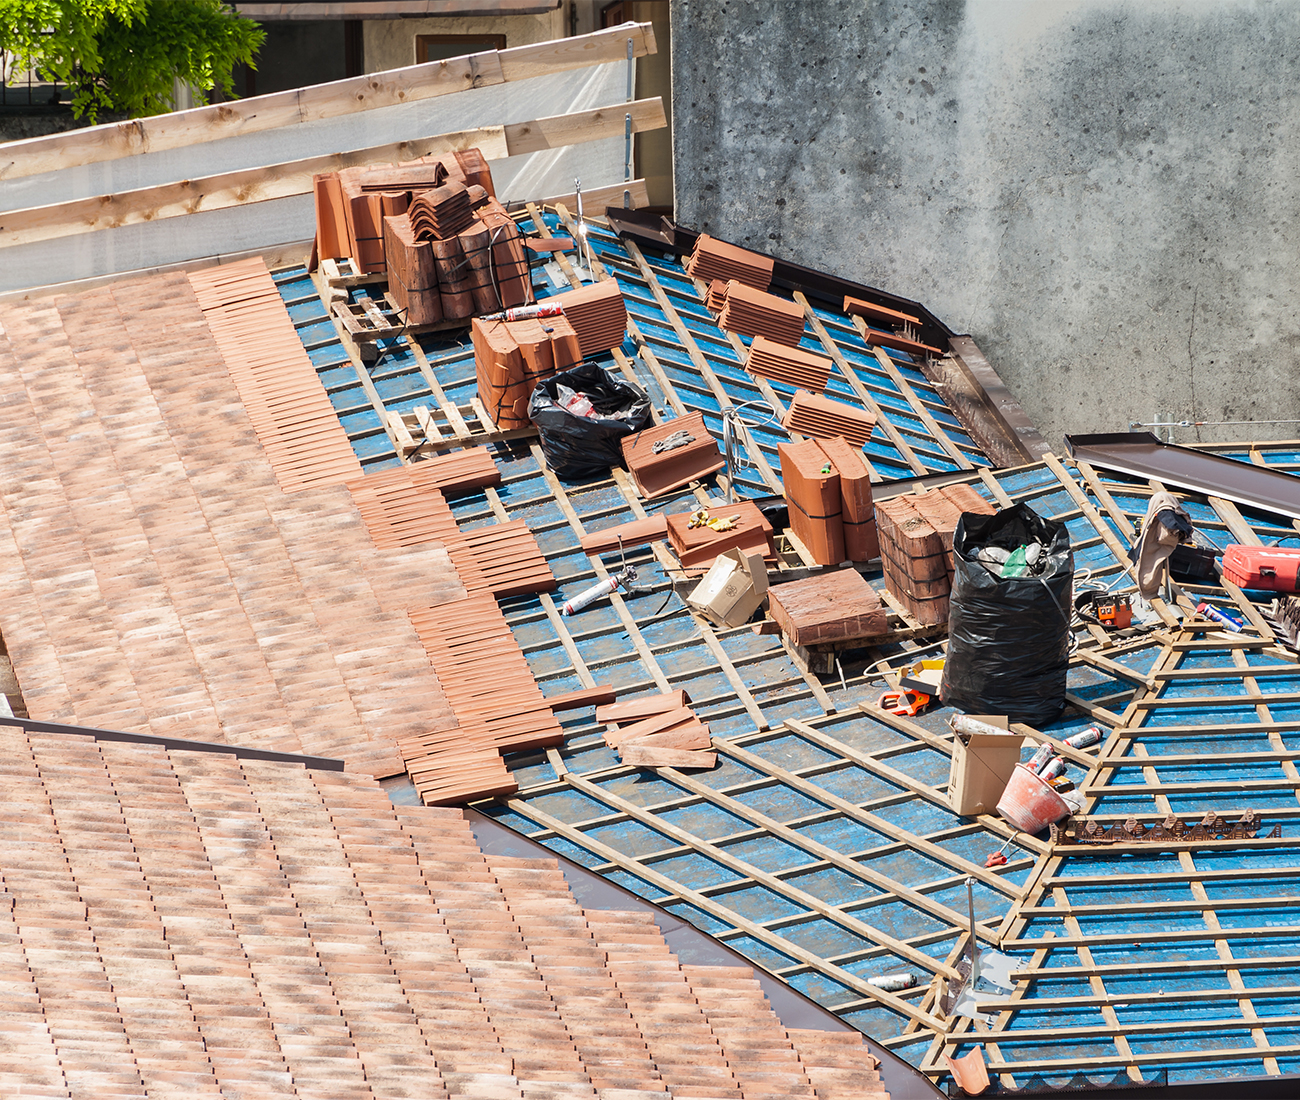 Rehabilitación de cubiertas en Burgos y provincia, para mantener protegido tu edificio o vivienda. Seguridad estructural, filtraciones, mal aislamiento, costo y presupuesto, durabilidad a largo plazo